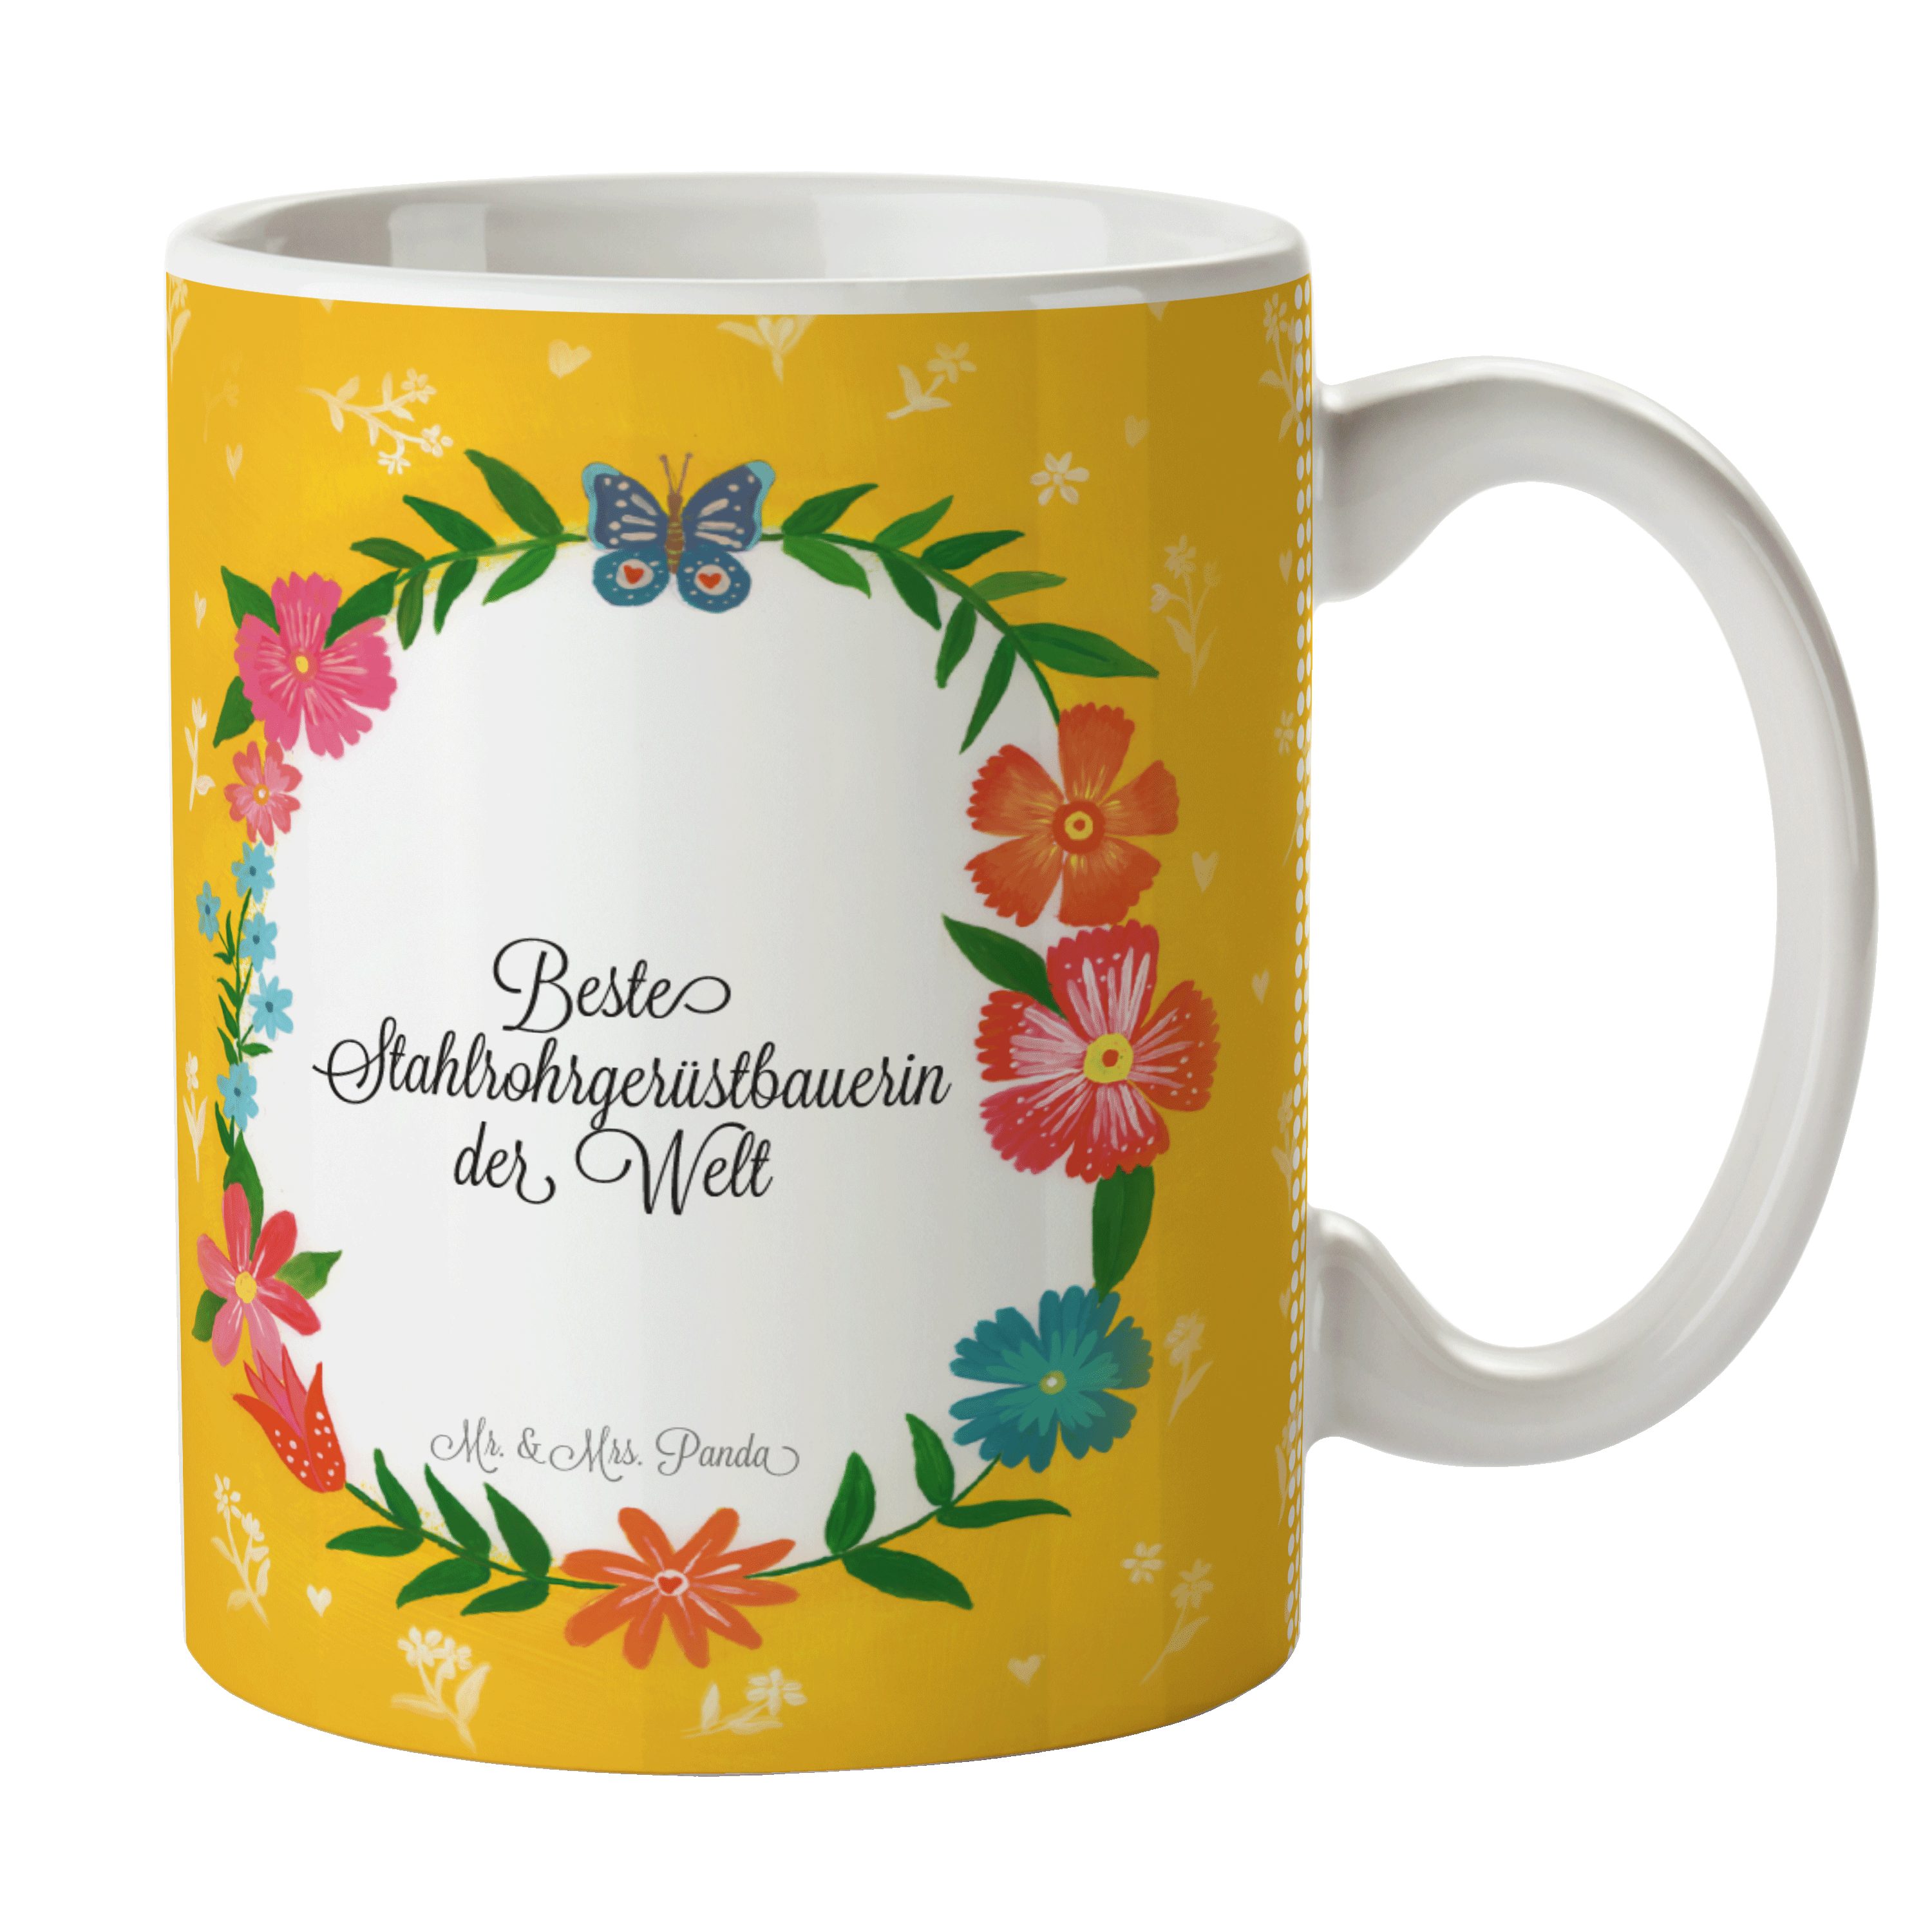 Mr. & Mrs. Panda Abschluss, Geschenk, Stahlrohrgerüstbauerin Kaffeetas, Keramik Tasse - Kaffeebecher